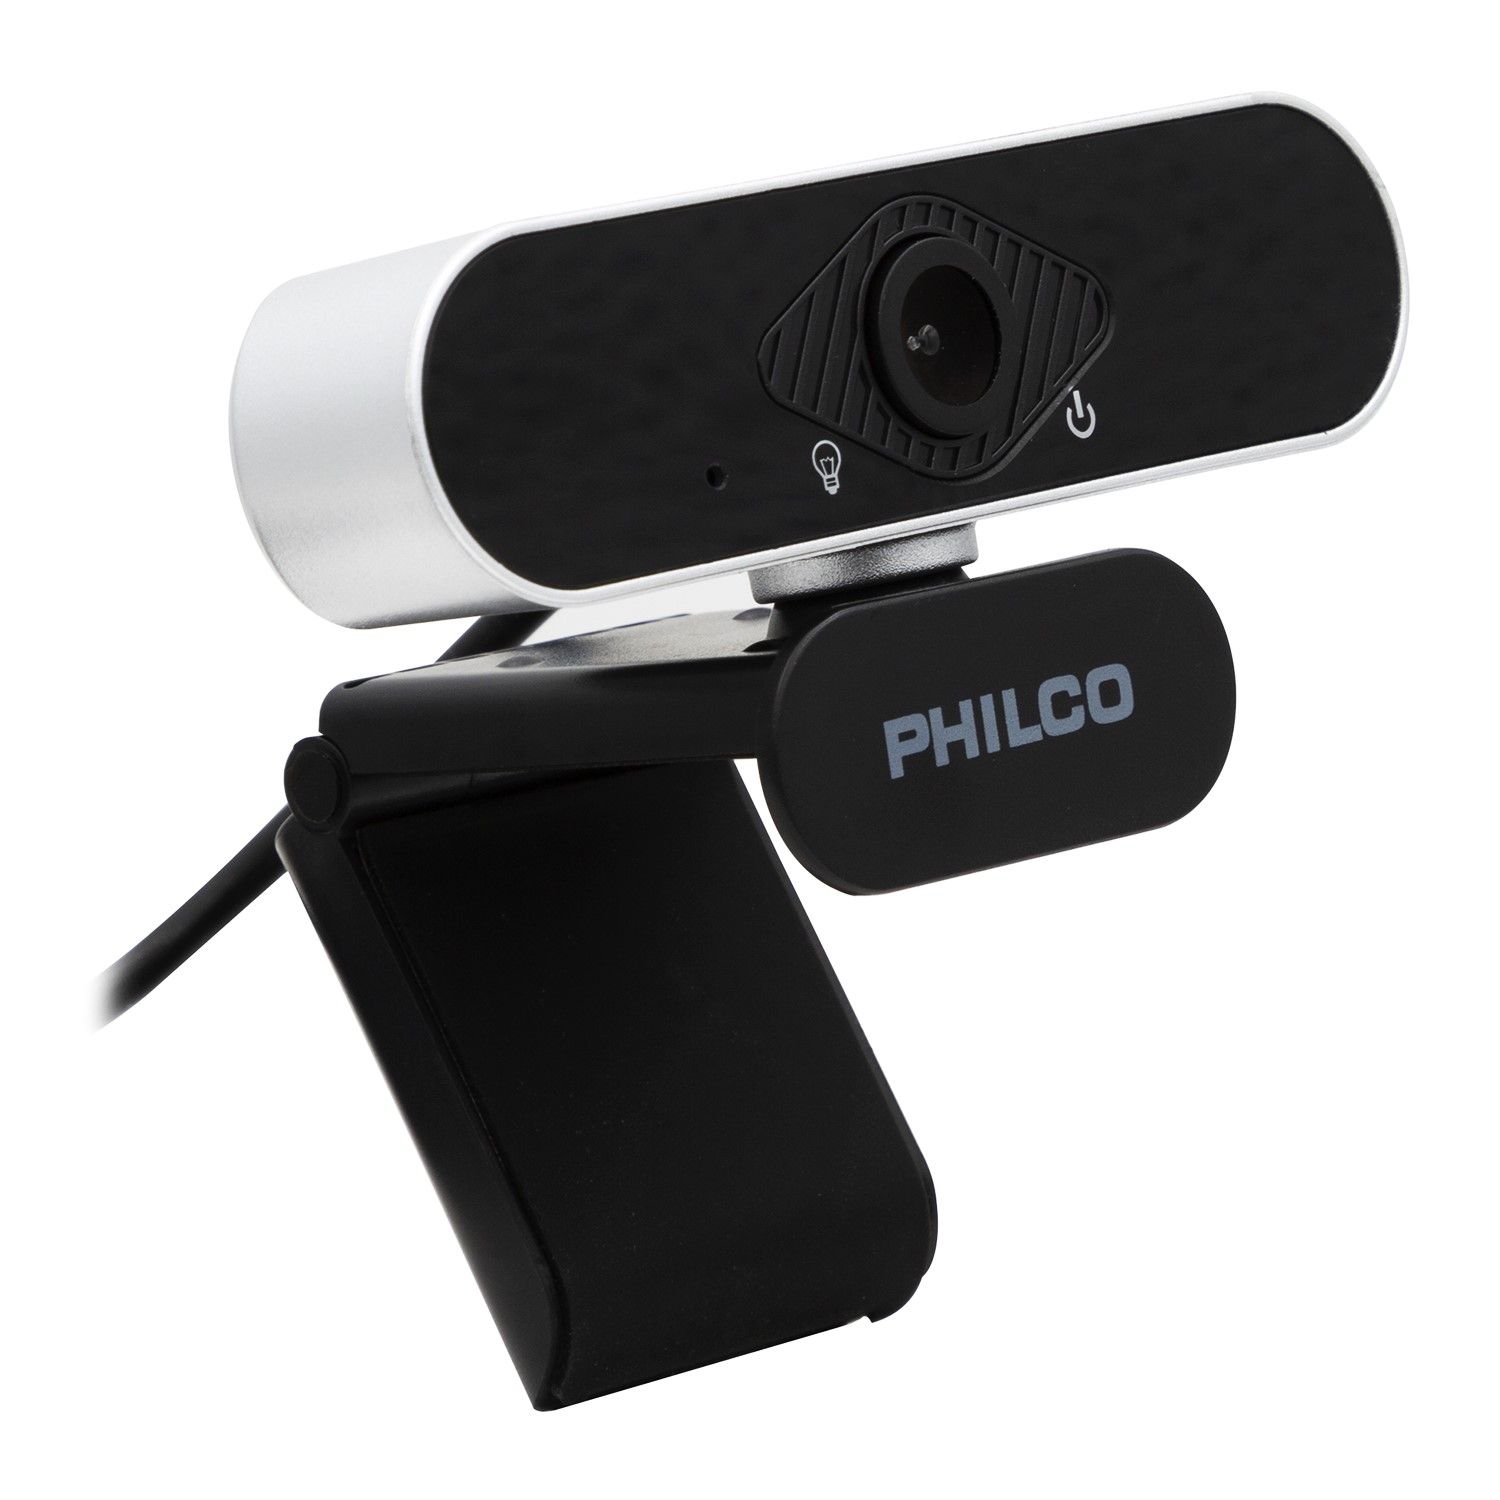 Webcam Cámara Web Philco W1152 Full Hd 1080P Usb - Philco